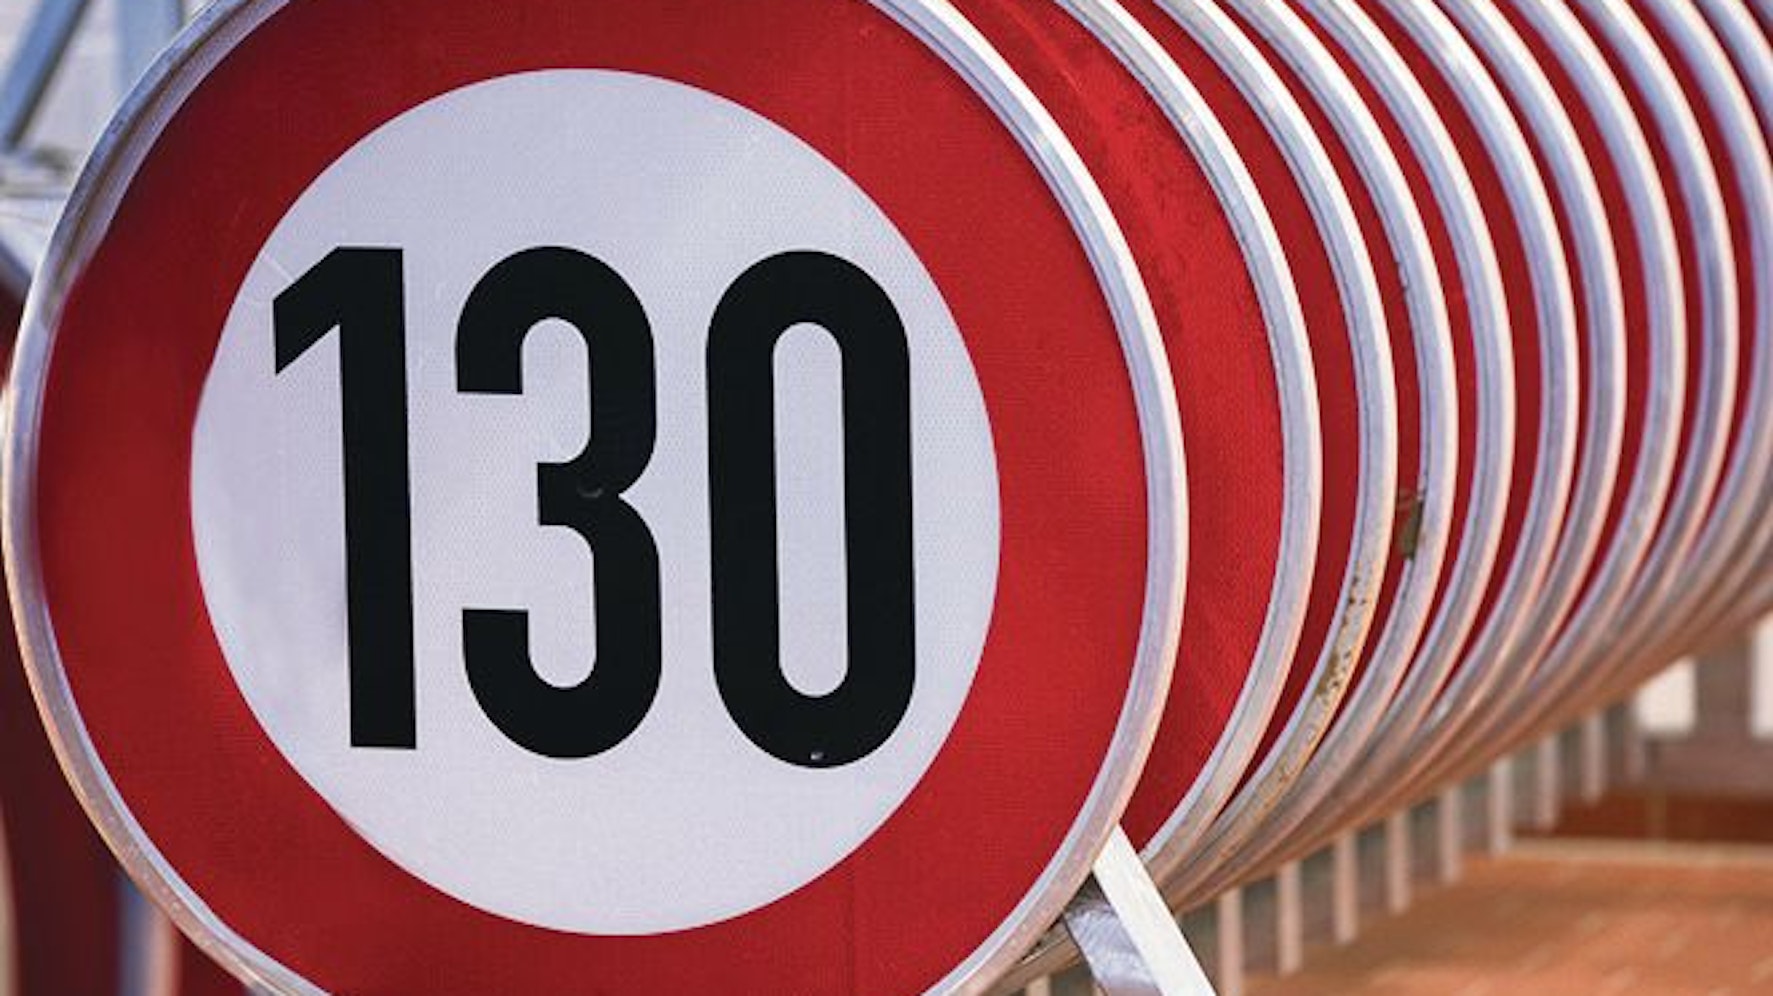 Hintereinander aufgereiht stehen zahlreiche Verkehrsschilder, die die zugelassene Höchstgeschwindigkeit von 130 Kilometern pro Stunde anzeigen.